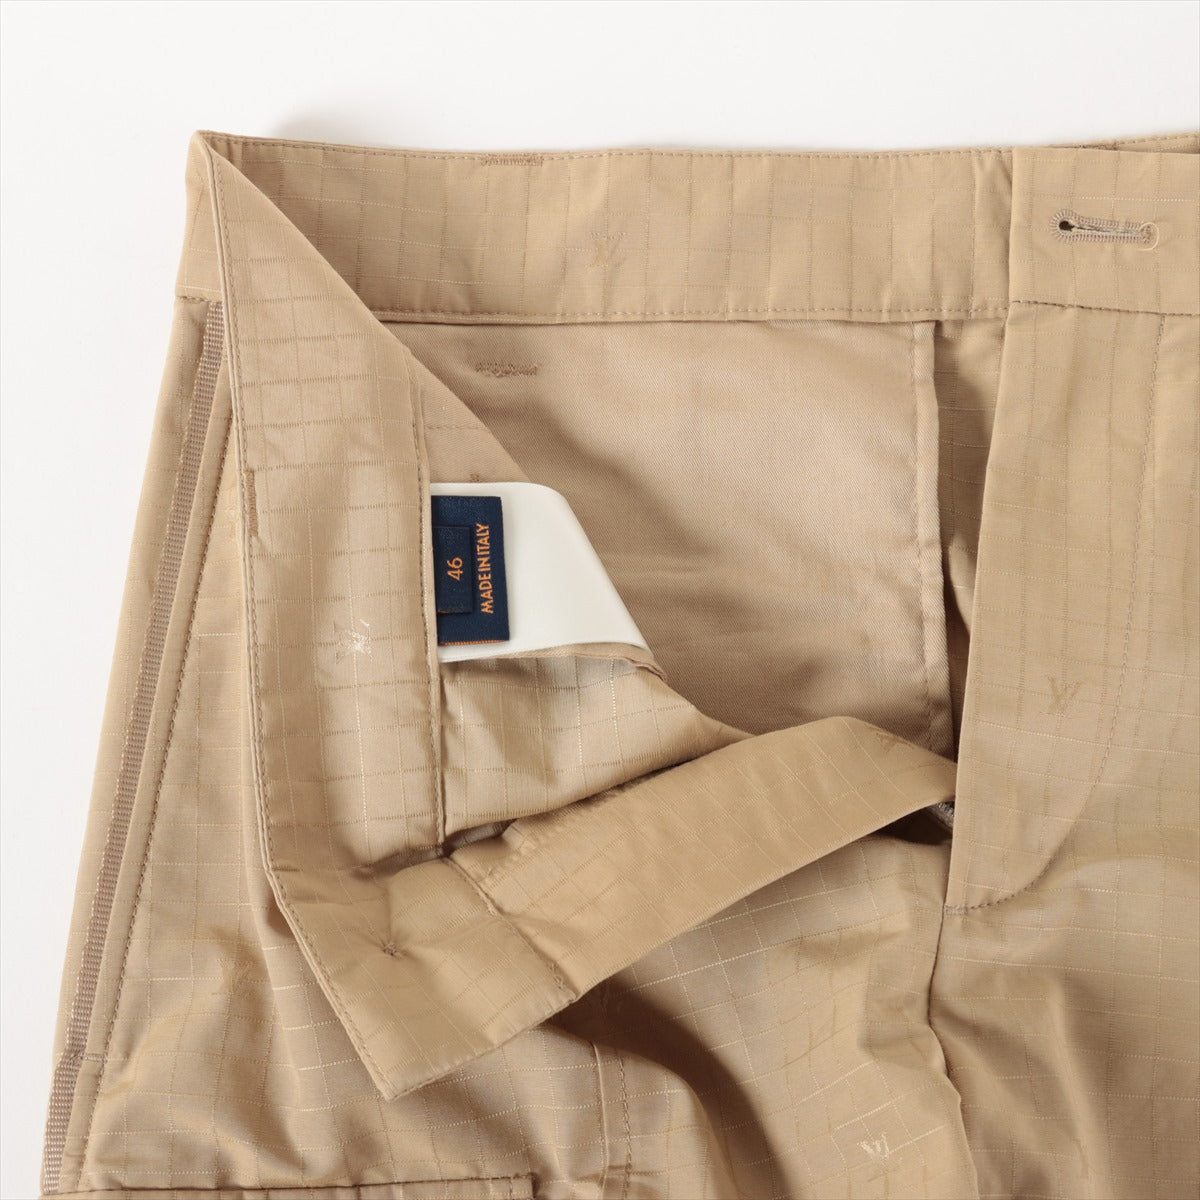 Louis Vuitton 23AW Cotton & nylon Short pants 46 Men's Beige  RM232M Monogram